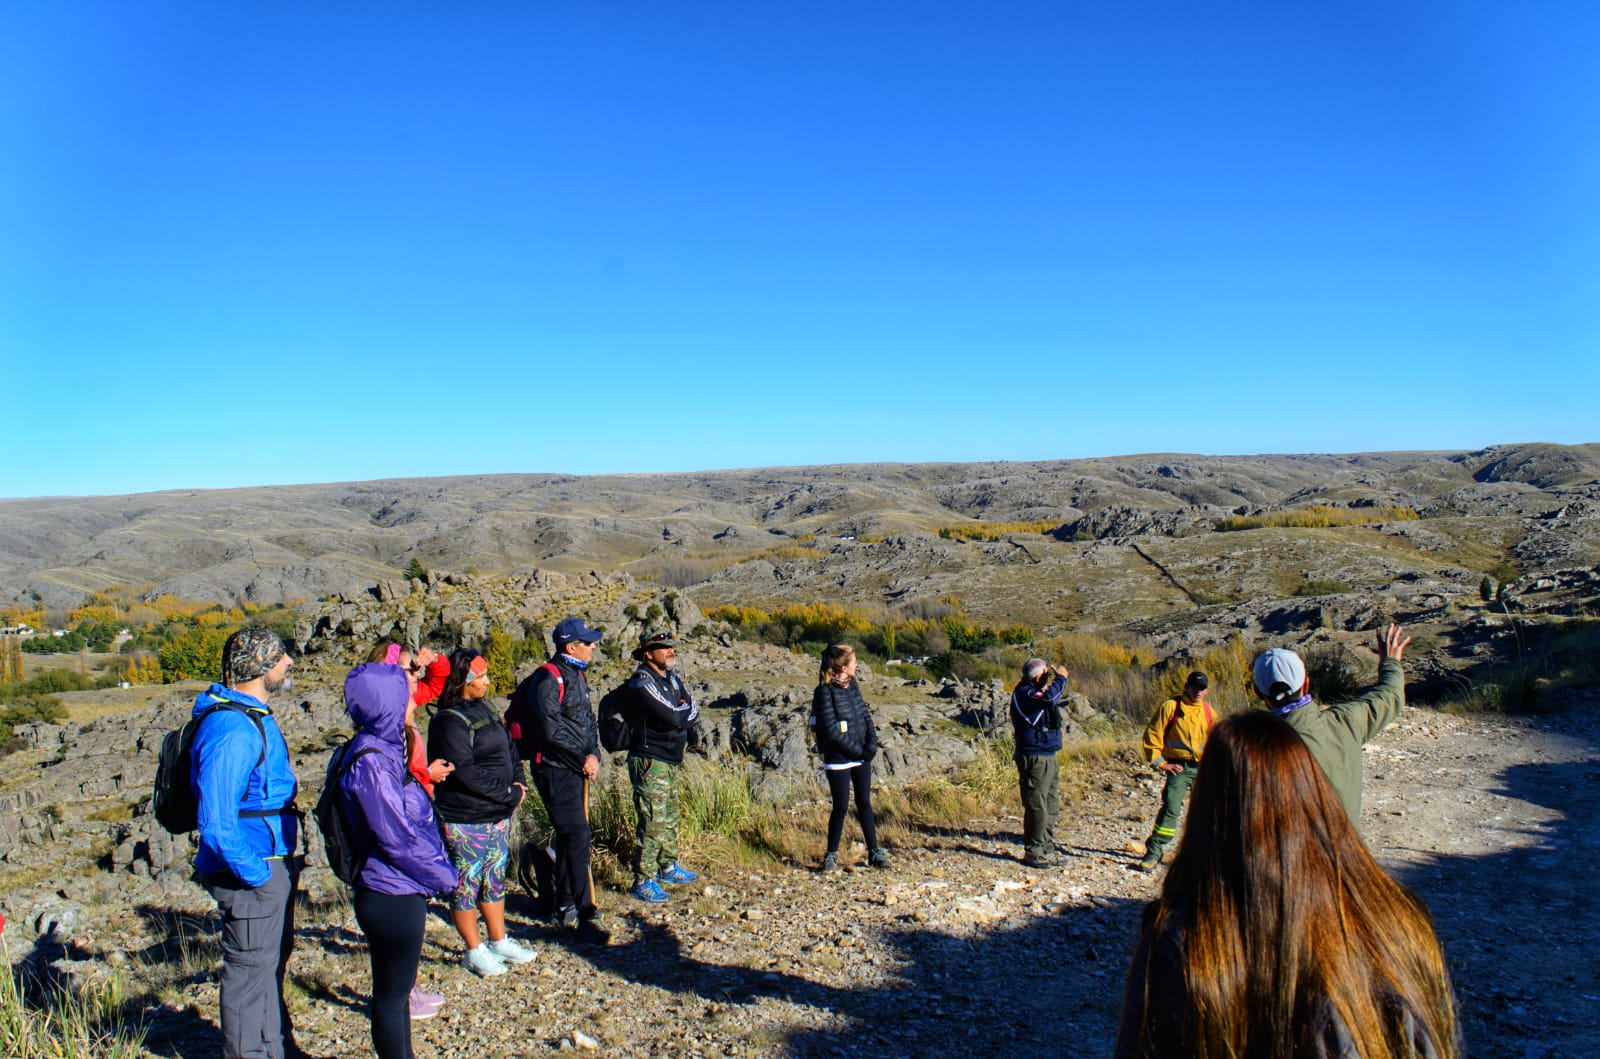 Muchos turistas optaron por el trekking al Cerro Tomolasta